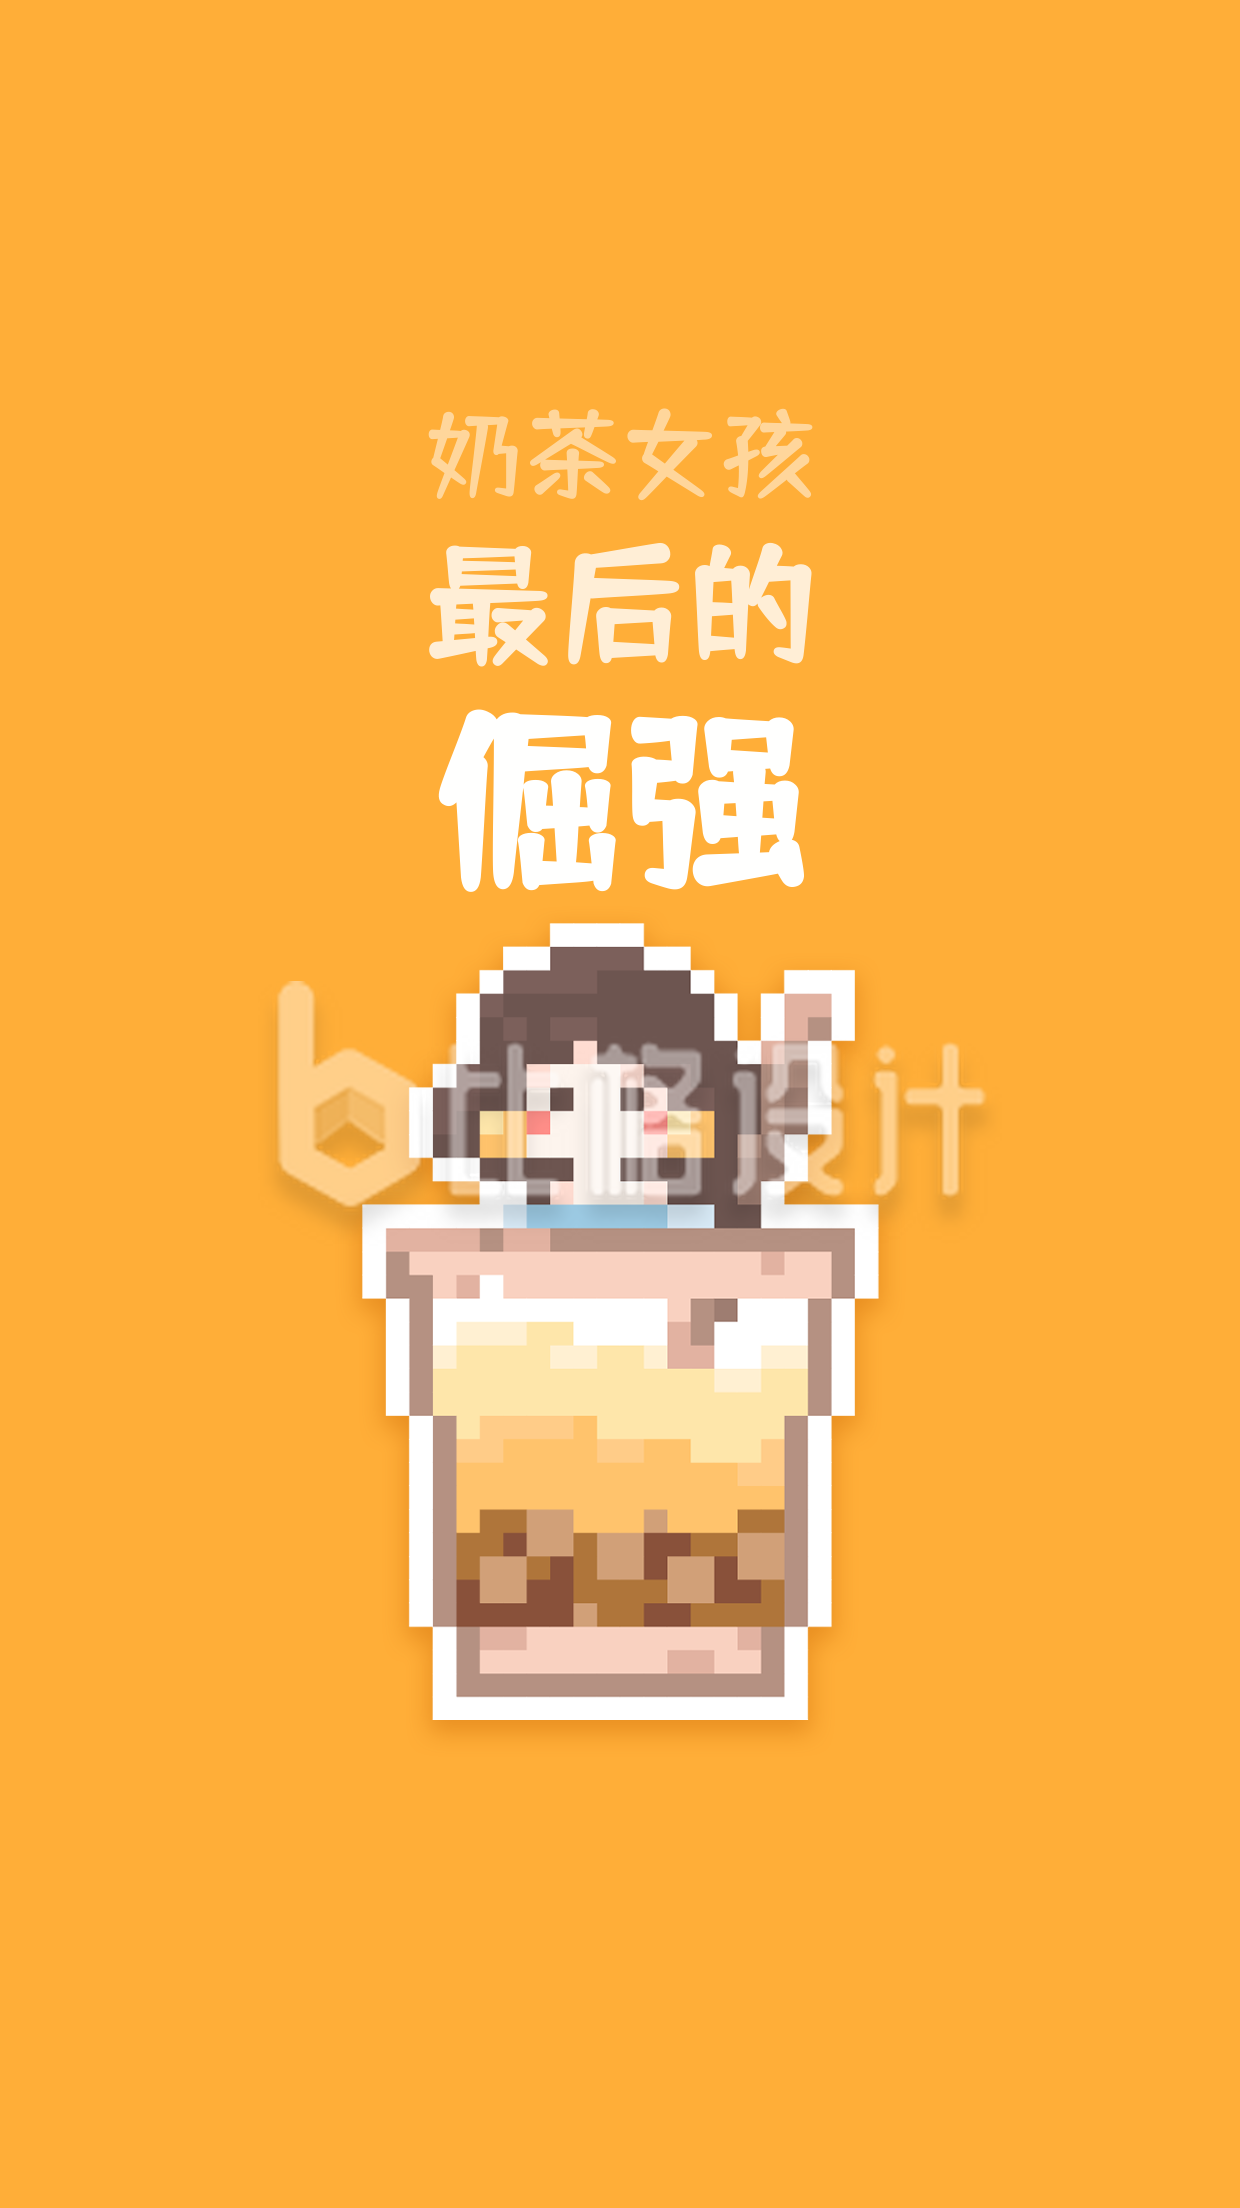 【像素画】奶茶女孩手机海报